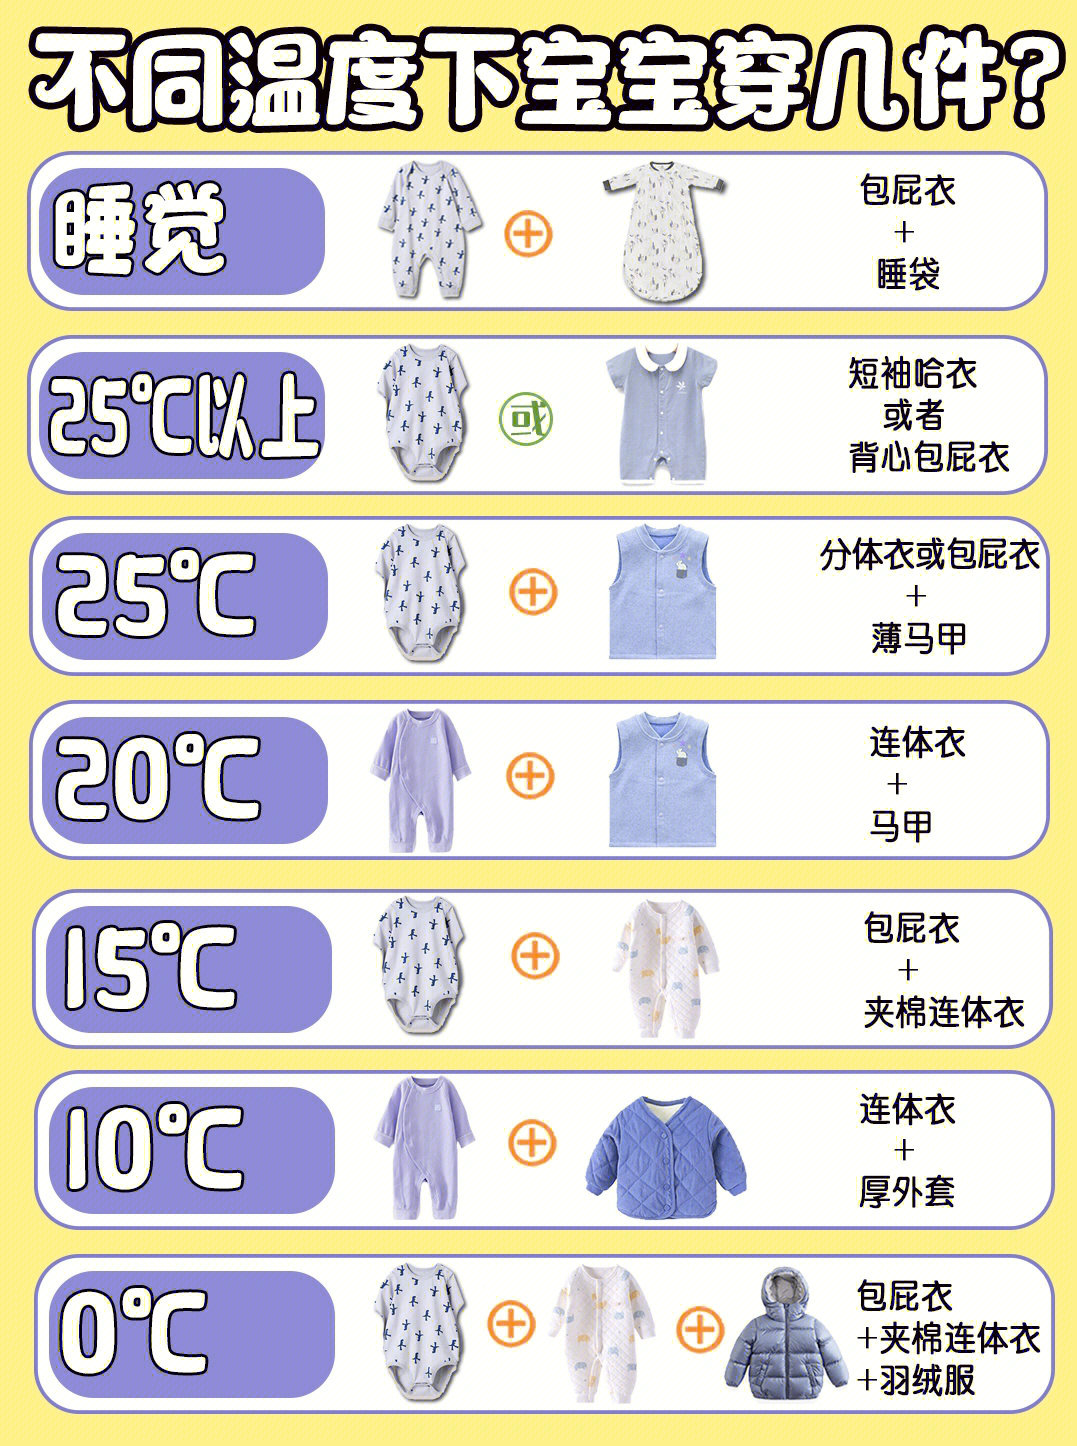 婴儿穿衣服温度标准图片